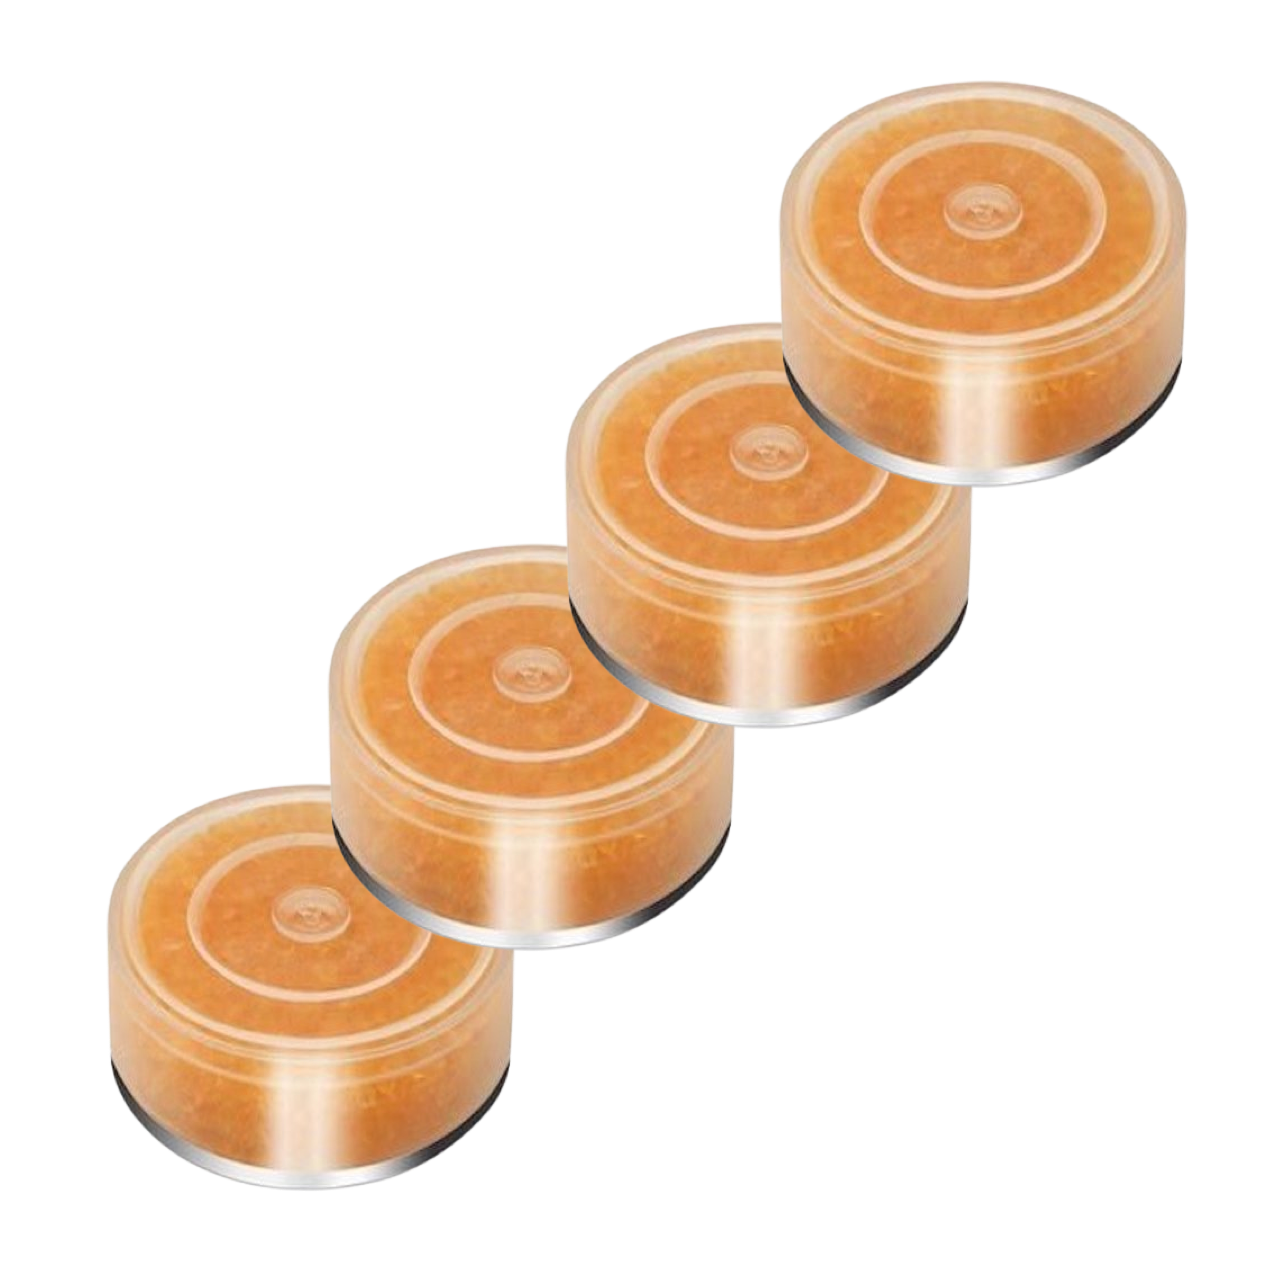 Abbildung von 4 transparenten Trockenkapseln mit orangenem Silikagel-Indikator in einer Reihe.